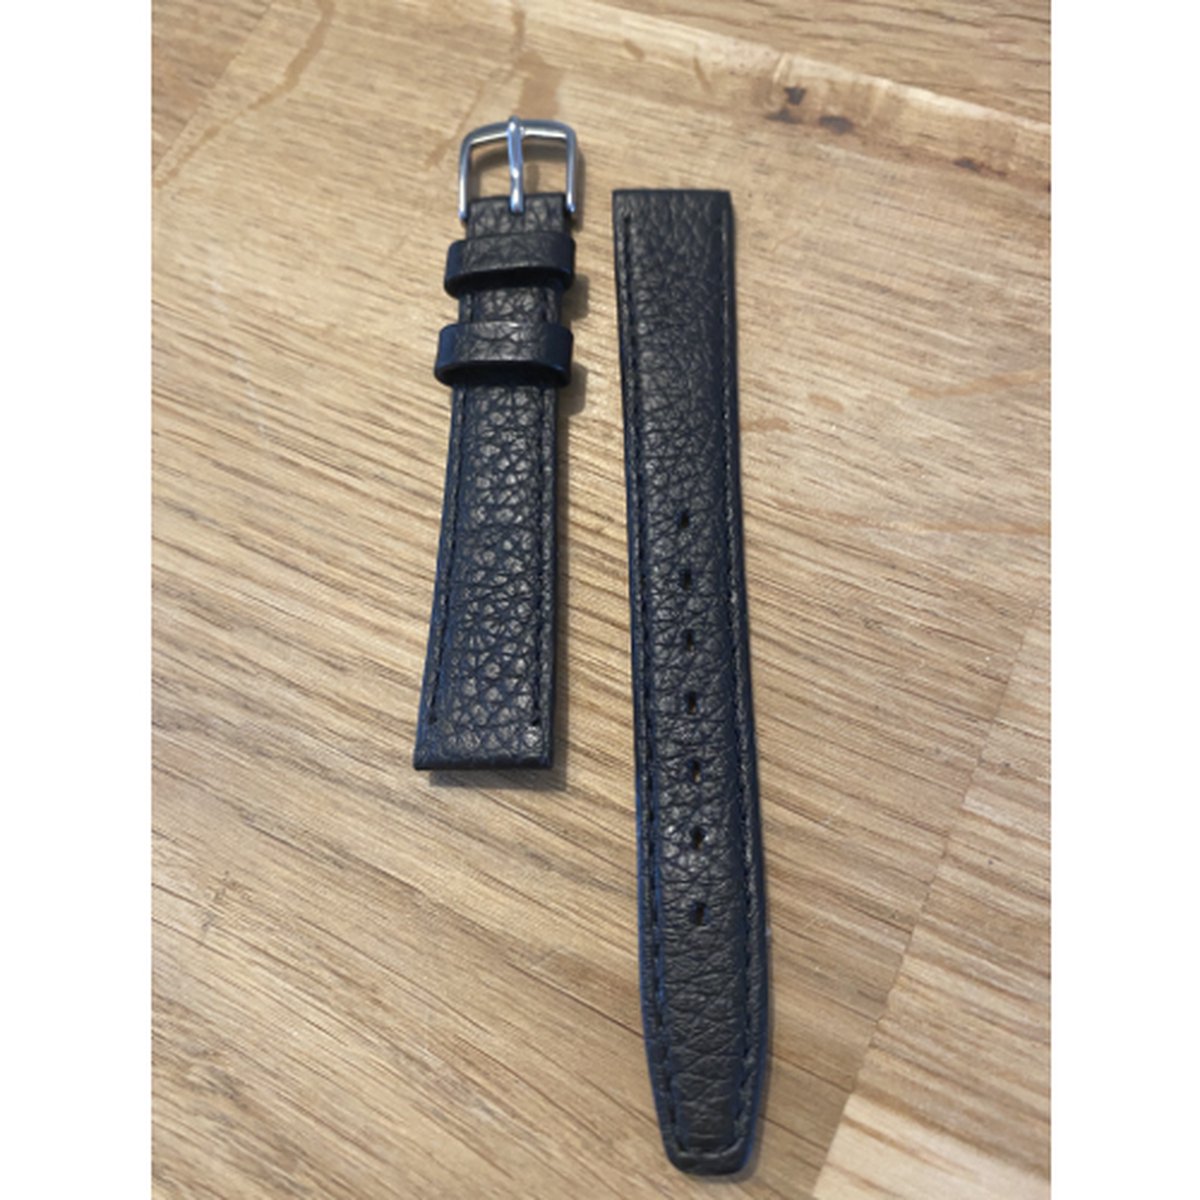 Horlogeband-dames-14mm-zwart-juweliers kwaliteit-soepel leder-anti allergisch